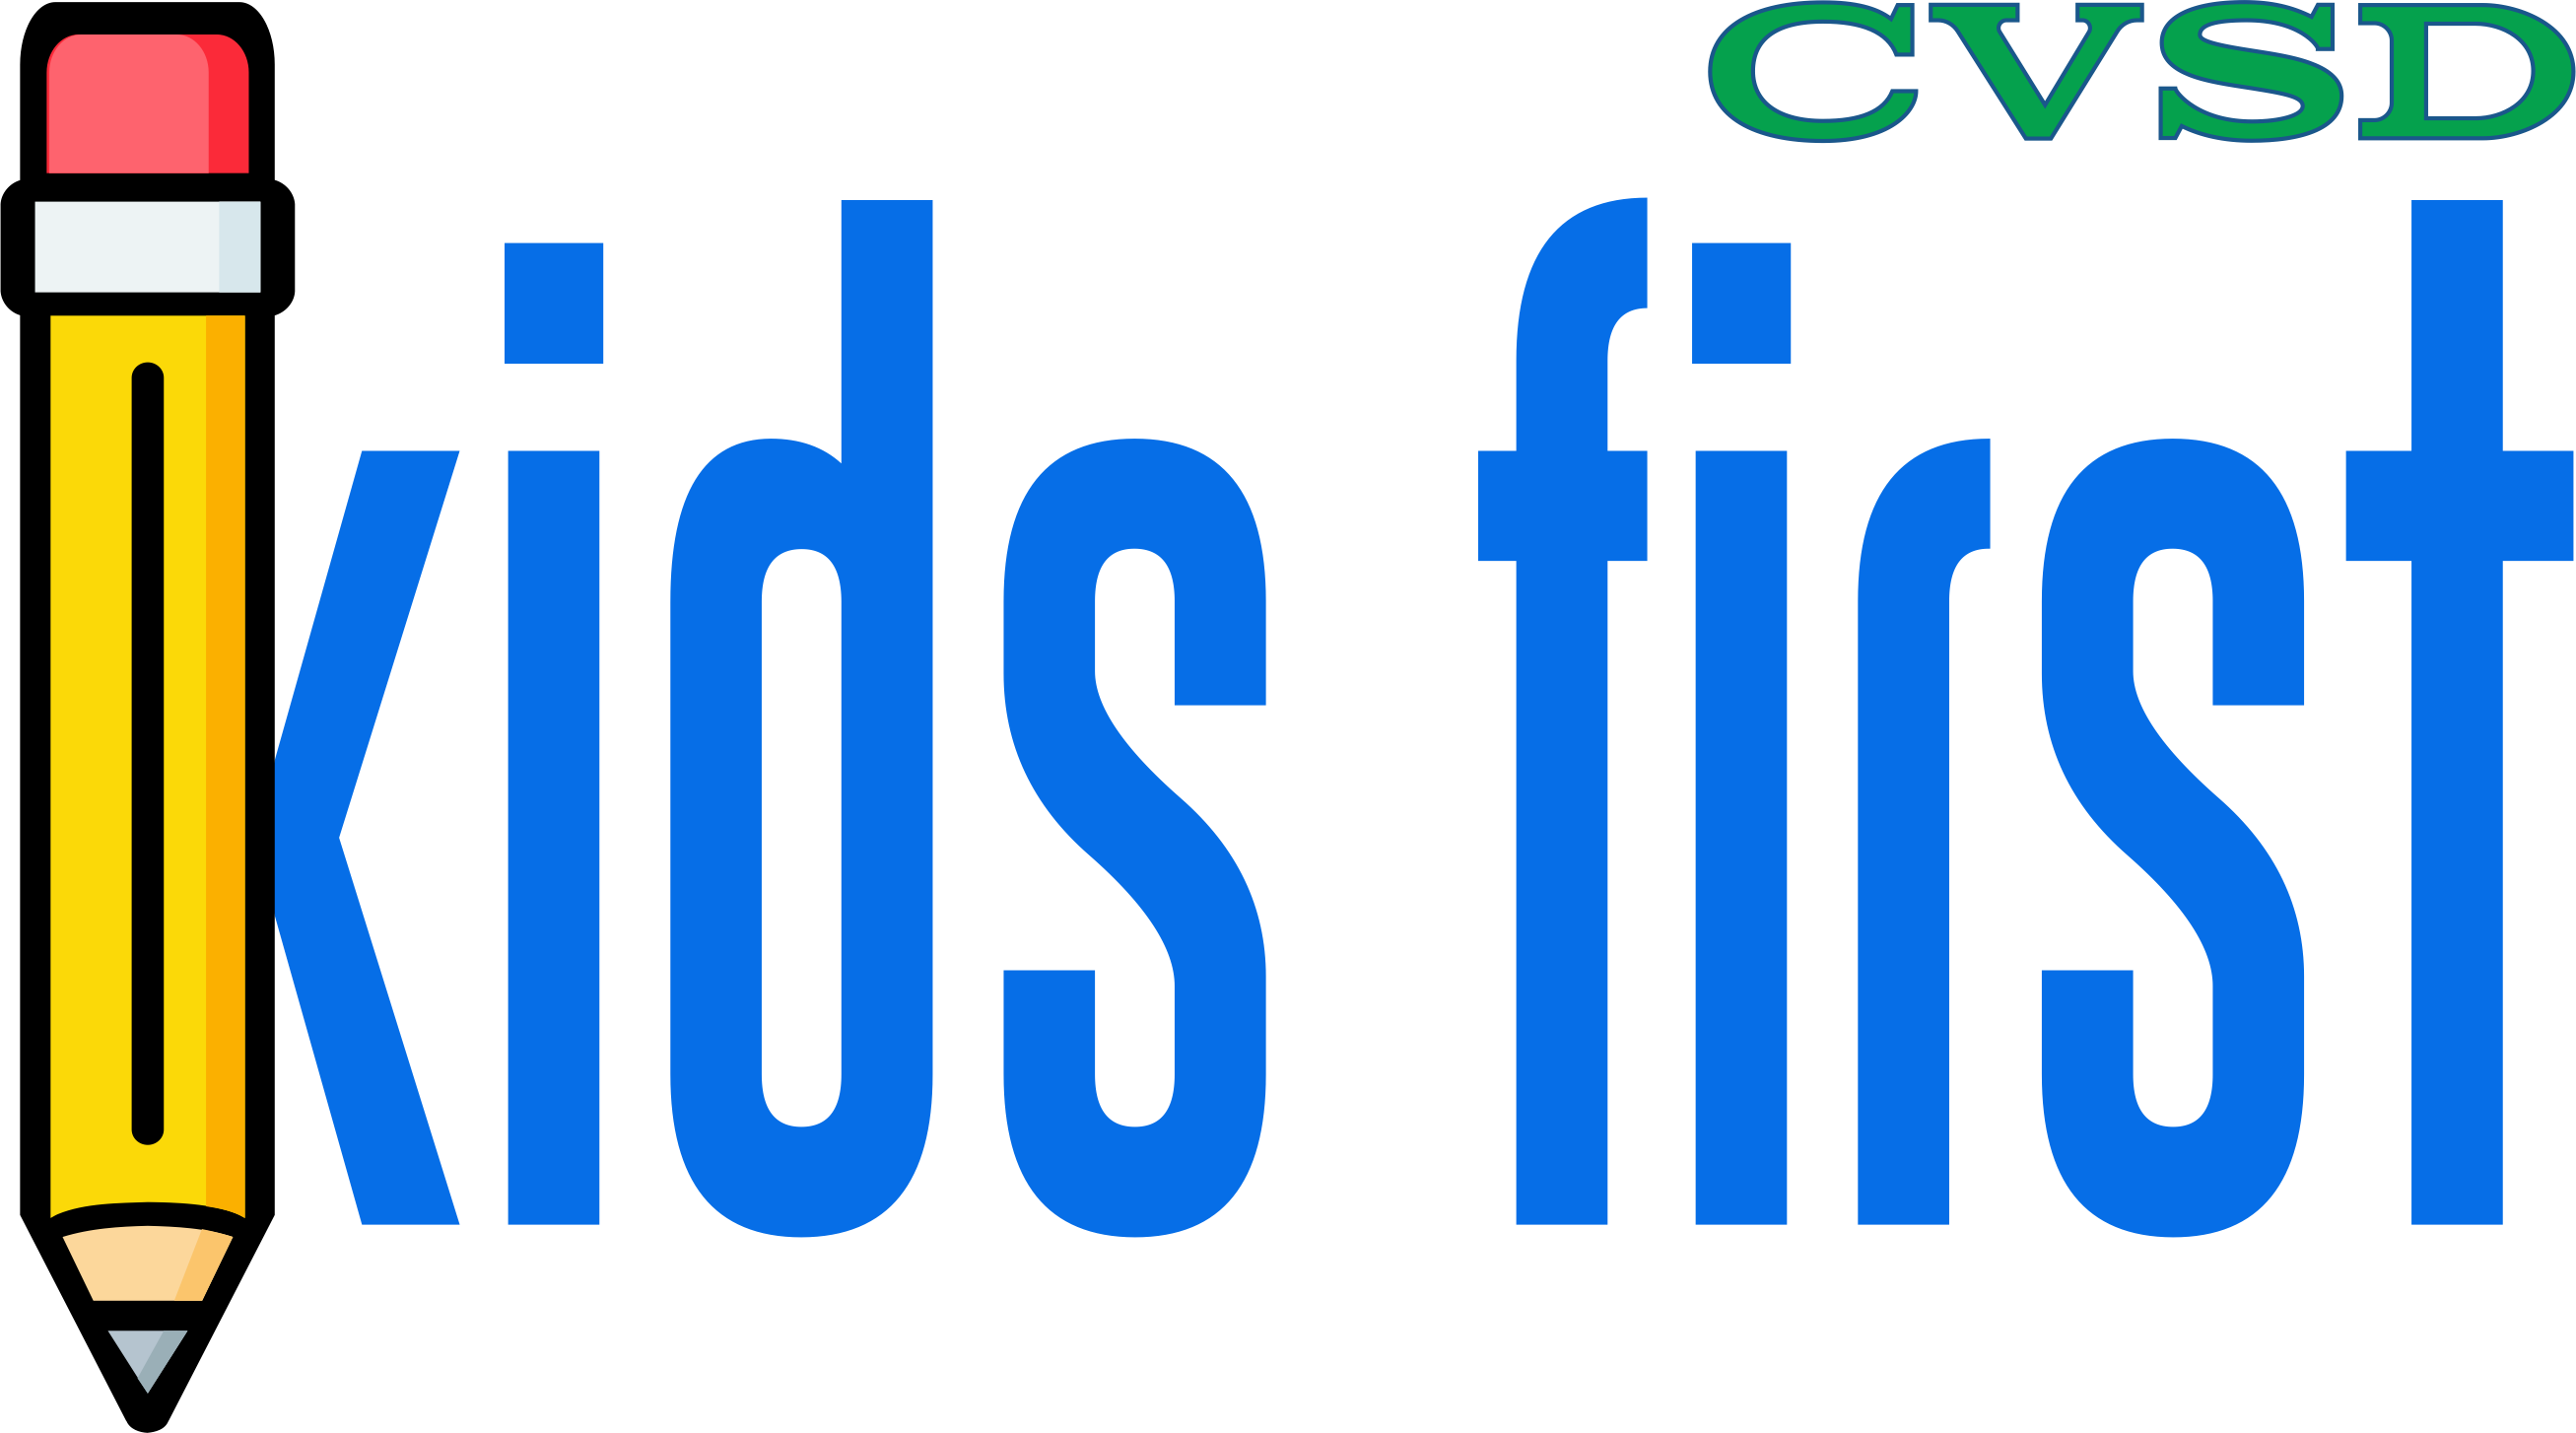 CVSD Kids First